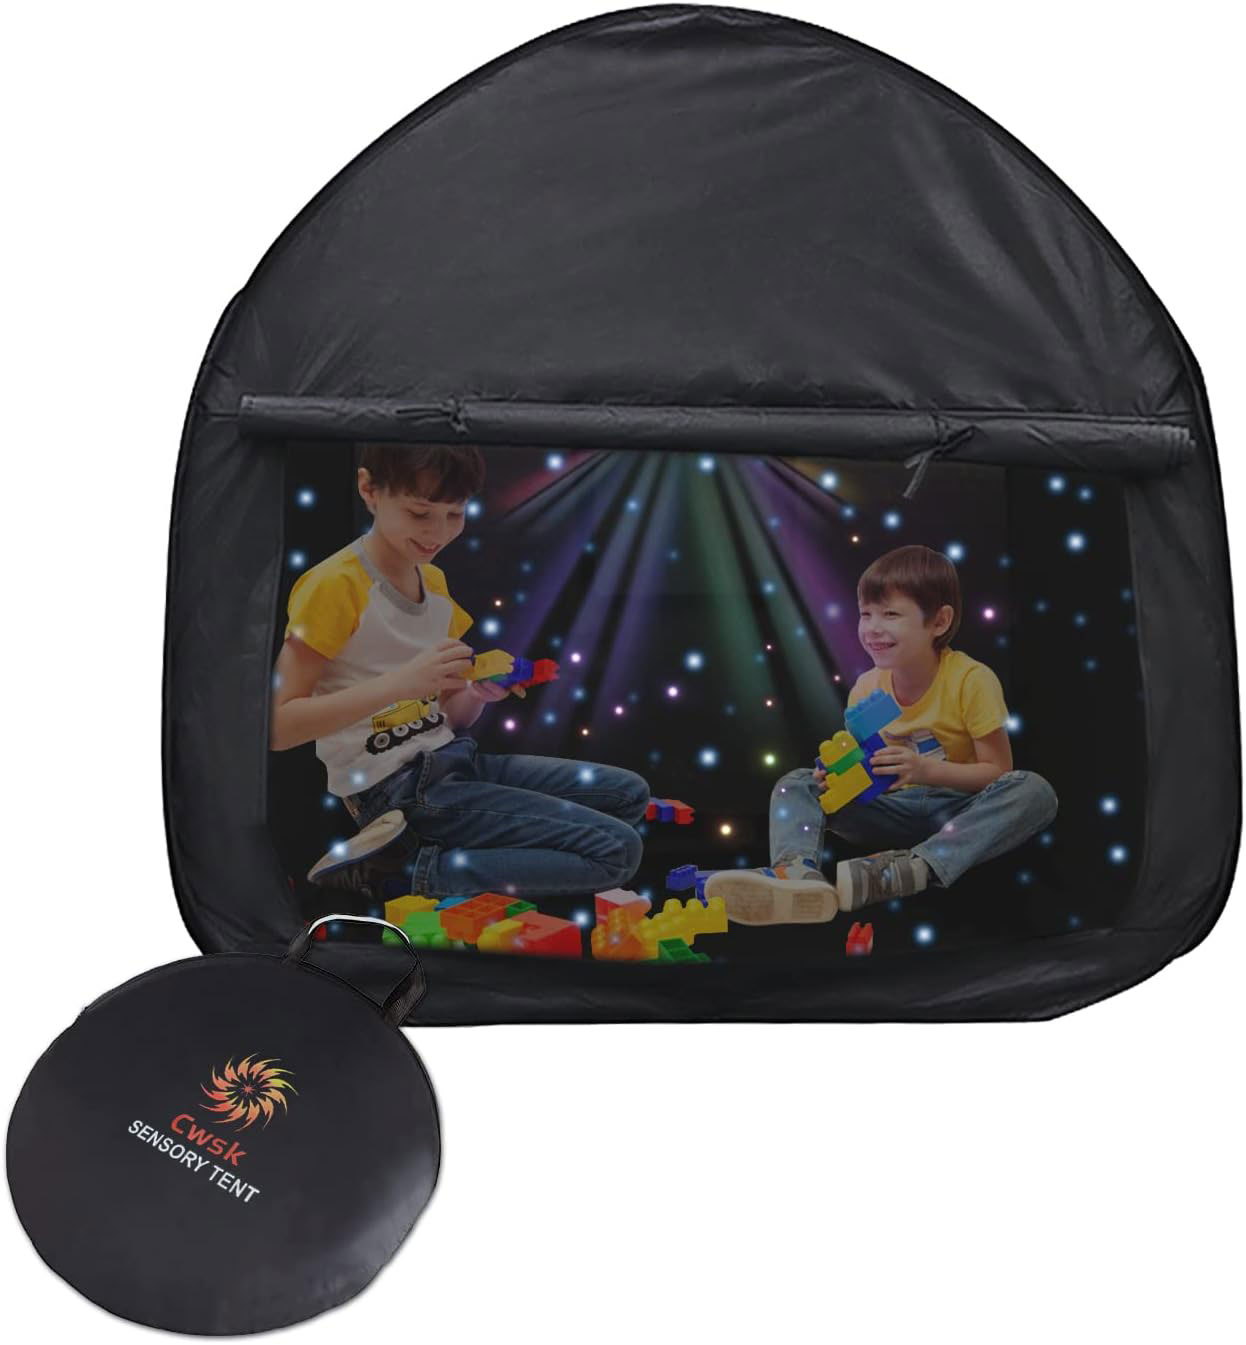 Portable Pop-Up Blackout Sensory Tent